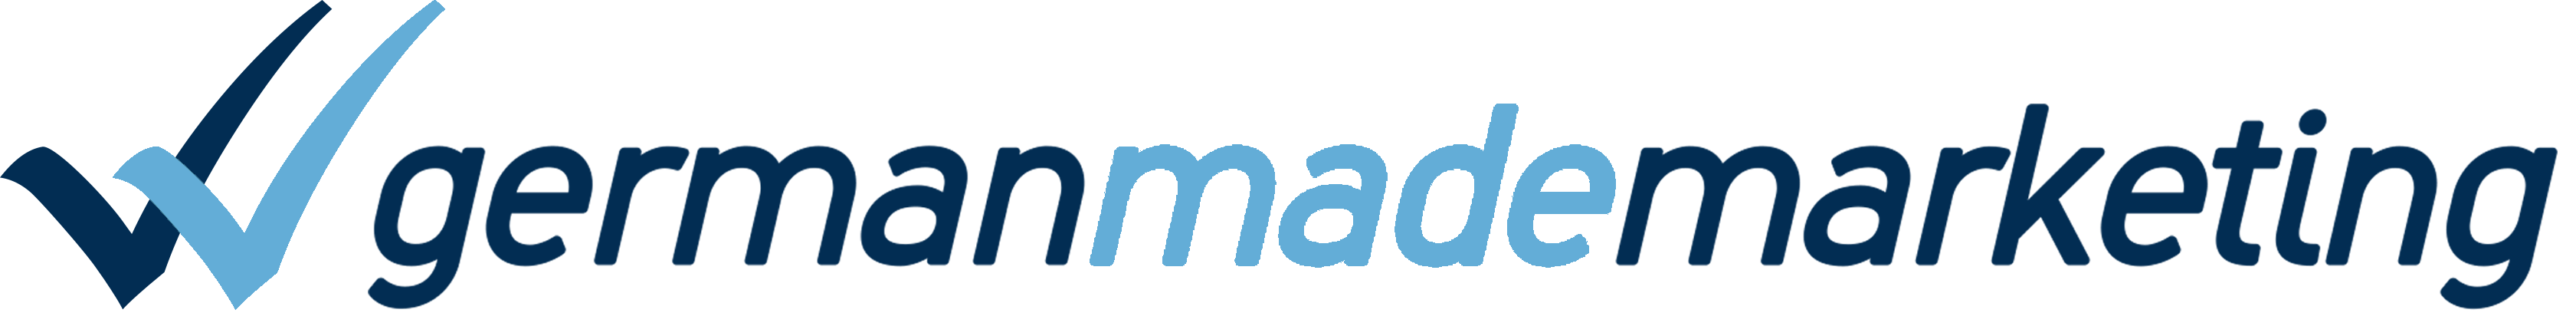 germanmademarketing logo blau